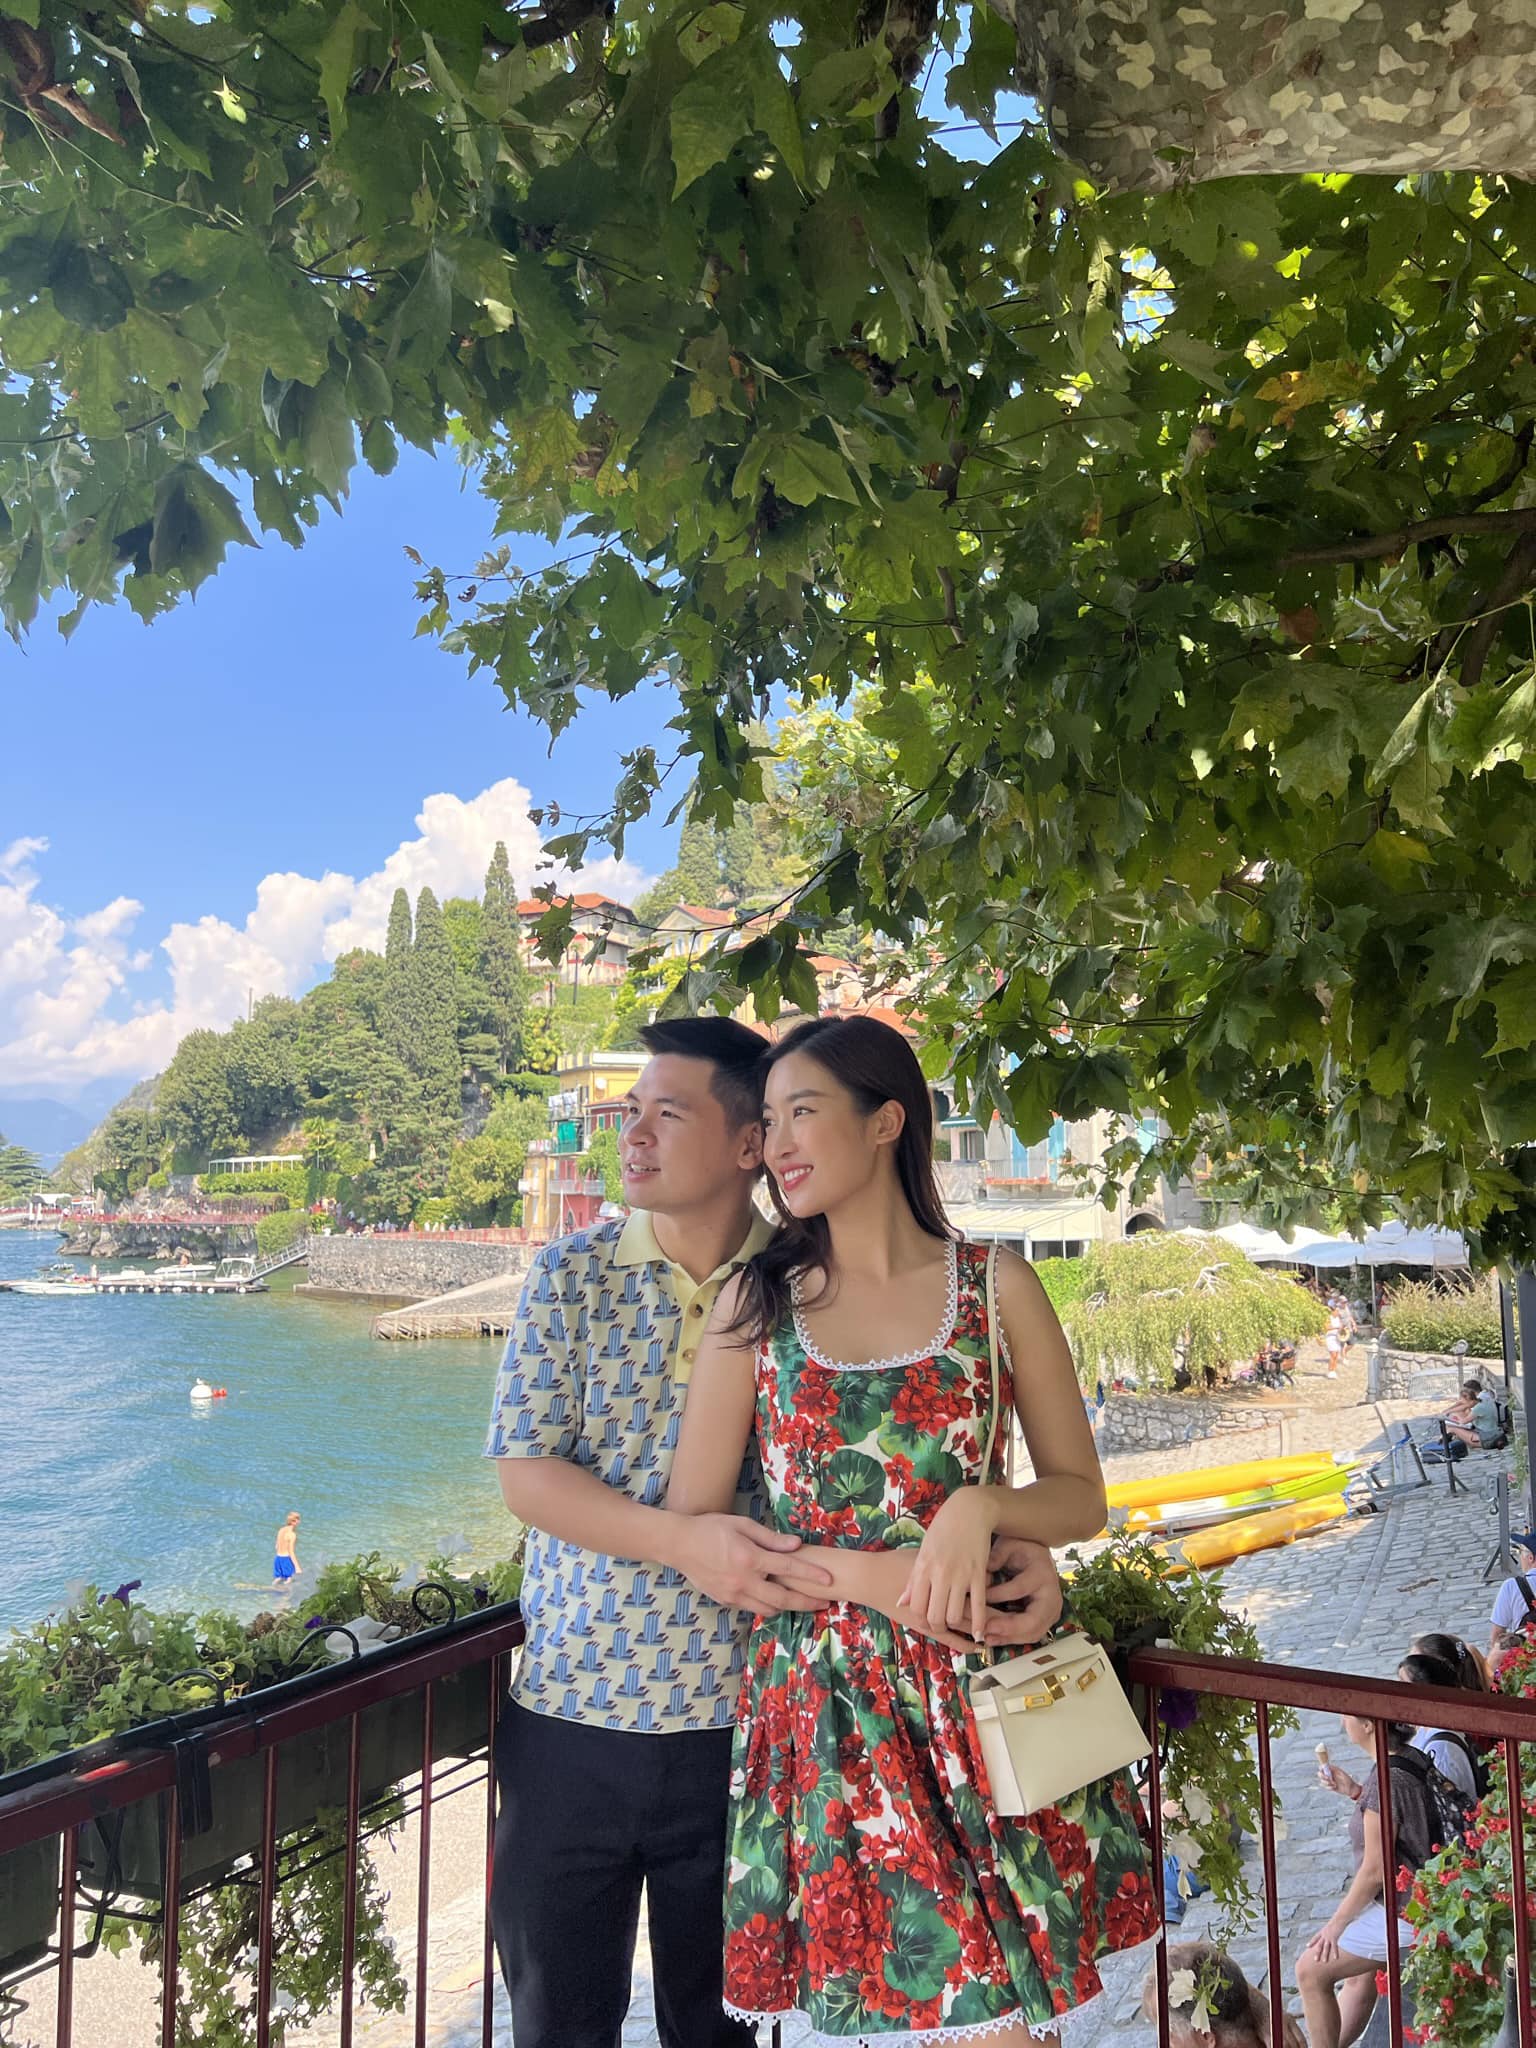 Cuộc sống tân hôn của sao Việt lên xe hoa năm 2022: Ngô Thanh Vân như hình với bóng cùng ông xã, Đỗ Mỹ Linh khiến chồng thấy 'áp lực' - Ảnh 5.